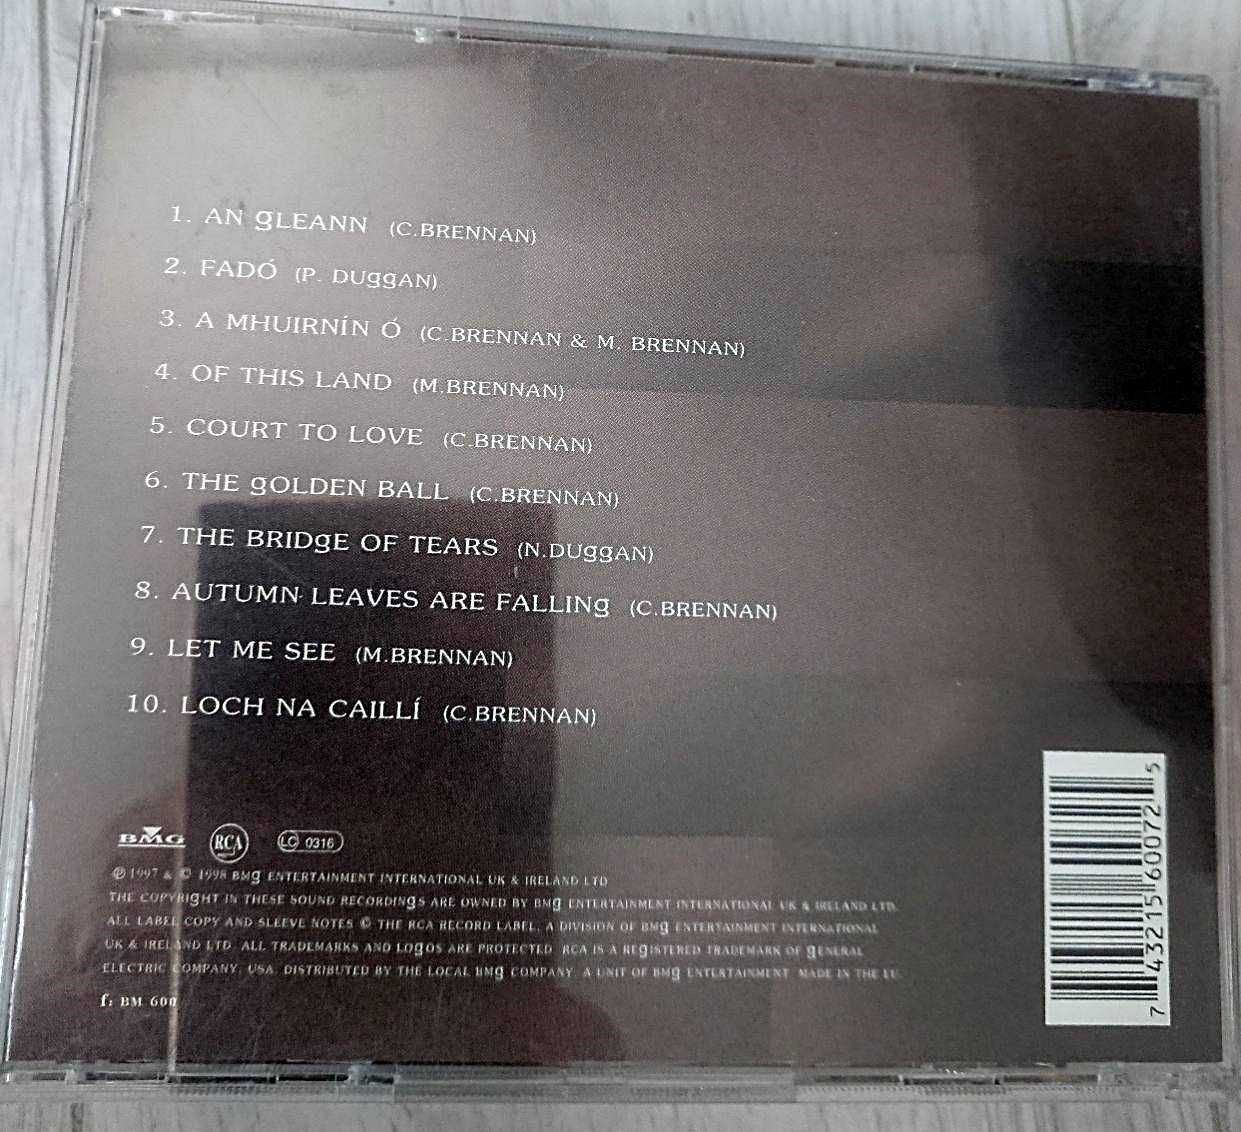 Clannad + Ryan Adams [CD]